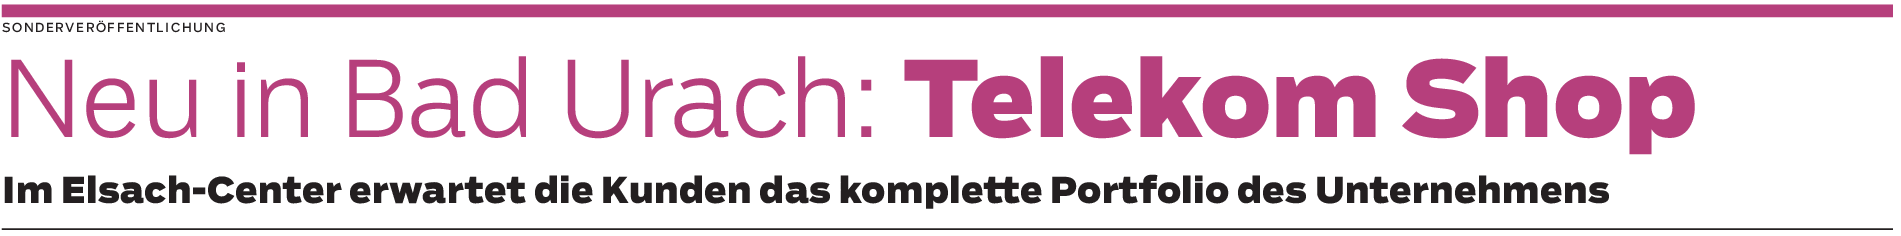 Telekom Shop in Bad Urach: Rundum-Service garantiert